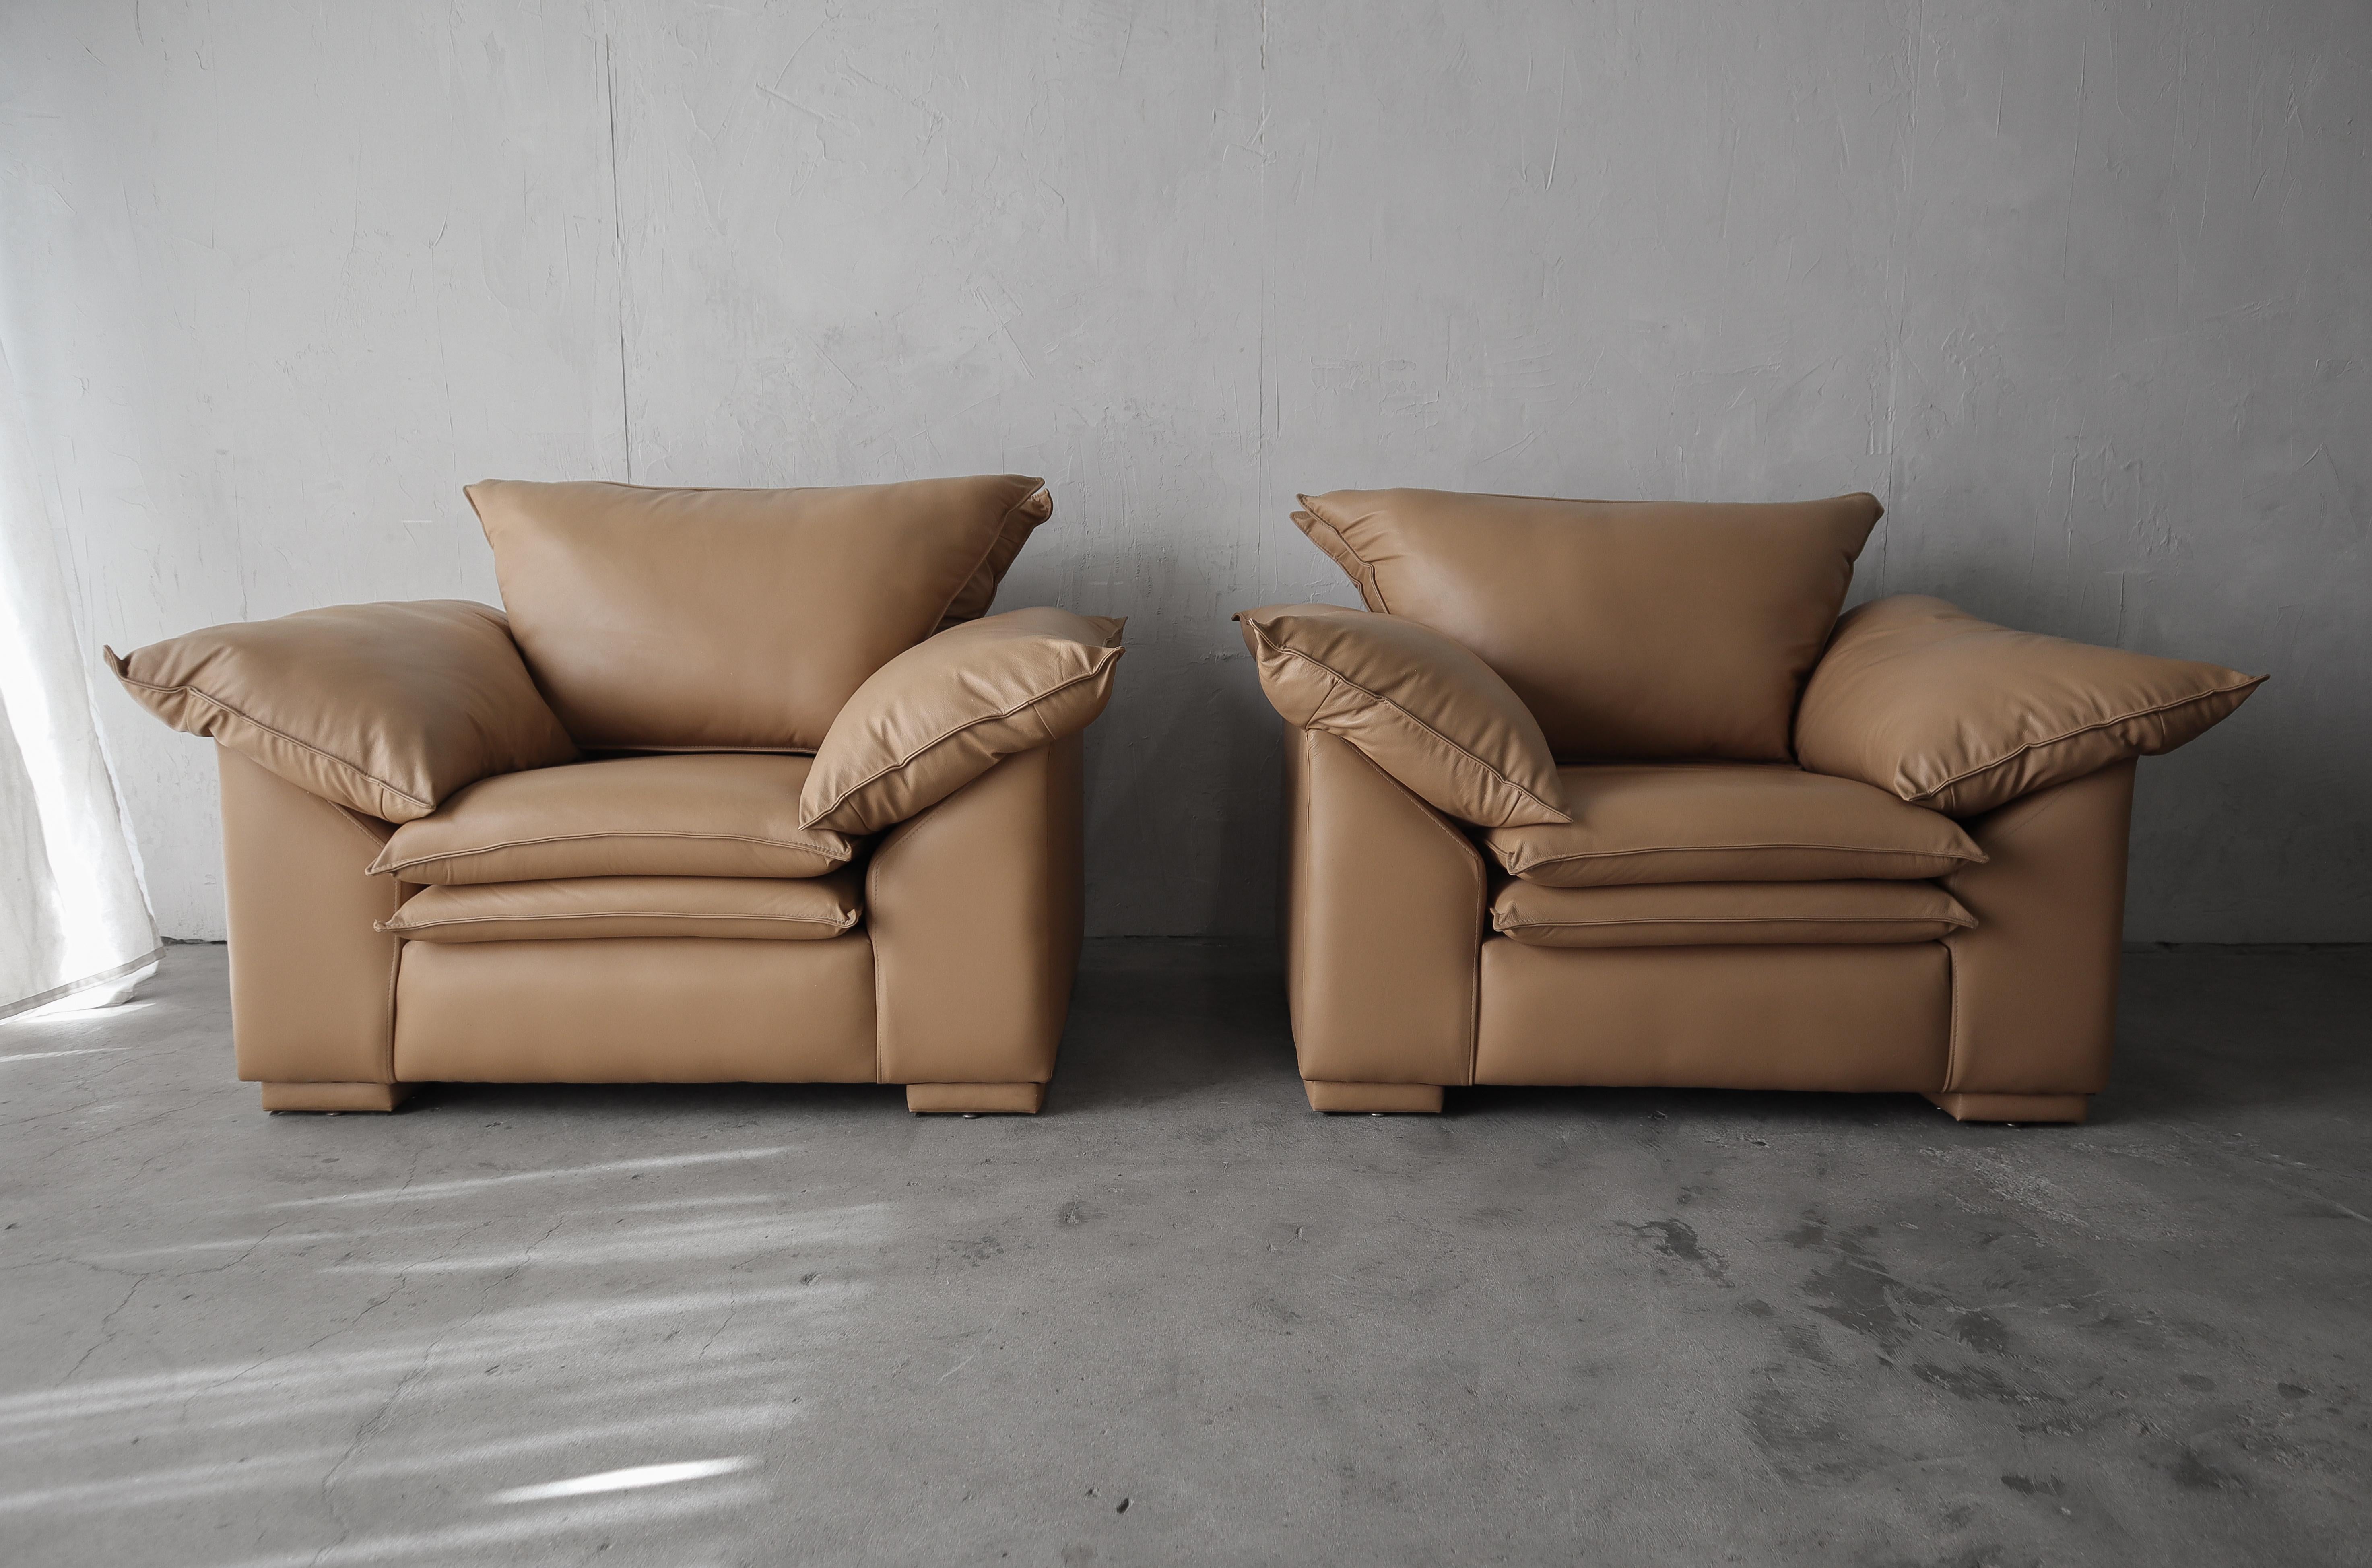 Tolles Paar übergroßer Post-Modern-Loungesessel aus Leder mit klassischen Linien, in hervorragendem Zustand.  Diese Stühle sind der Inbegriff von Komfort.

Die Stühle weisen nur sehr geringe Gebrauchsspuren auf.  Installationsbereit.